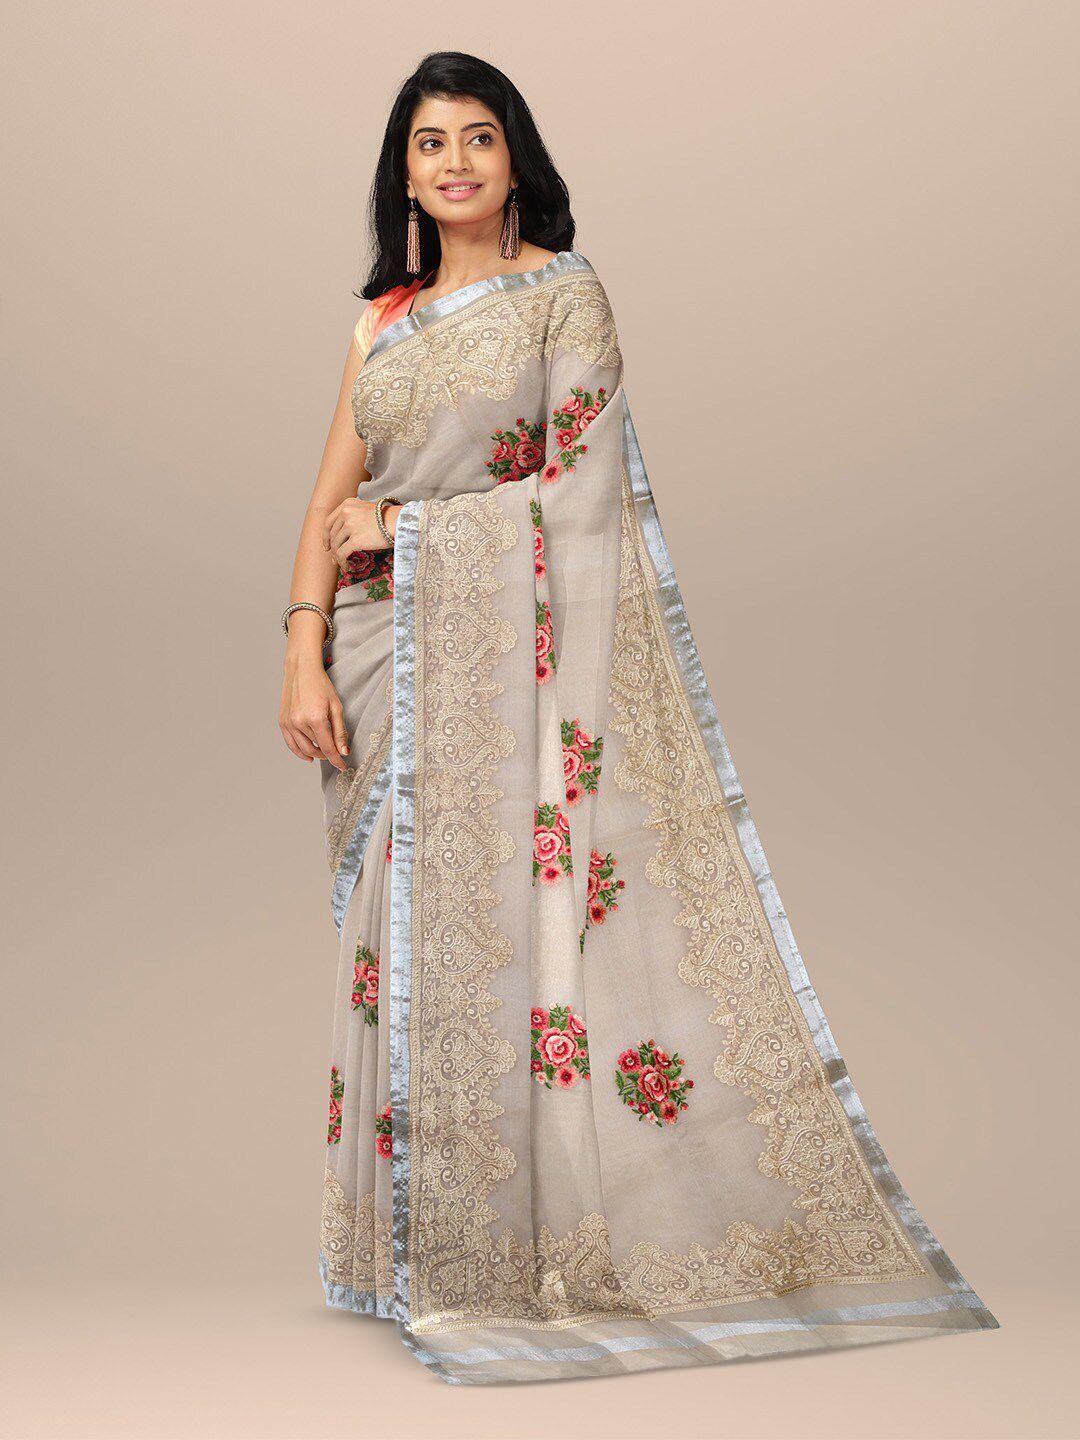 sarika floral embroidered saree